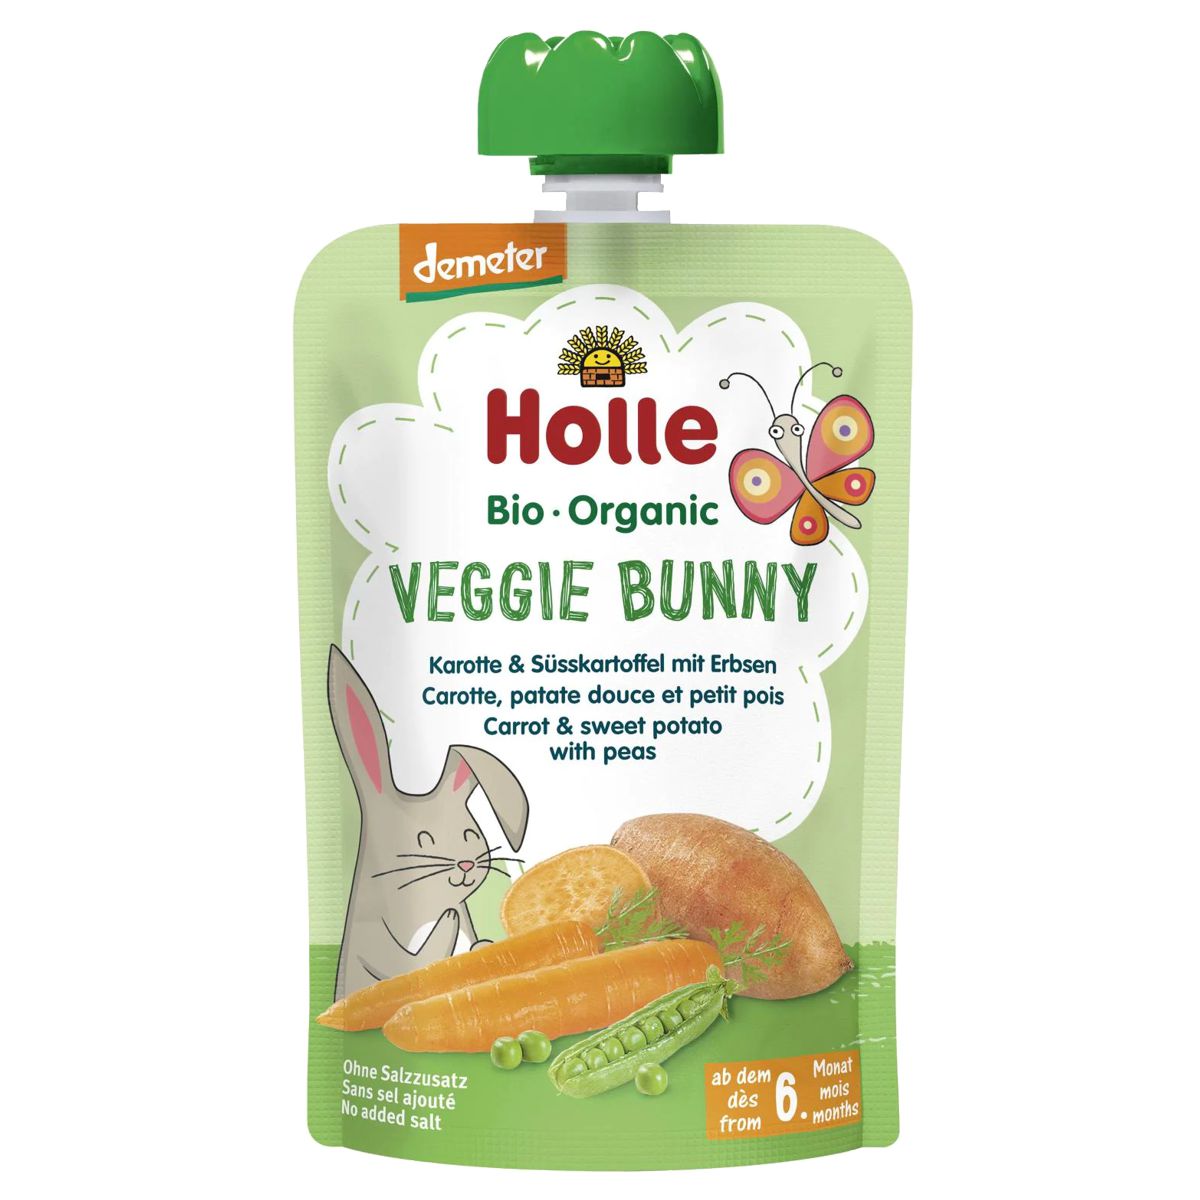 Holle_Veggie_Bunny_Pouchy_Karotte_Süsskartoffel_Erbsen_100g_kaufen